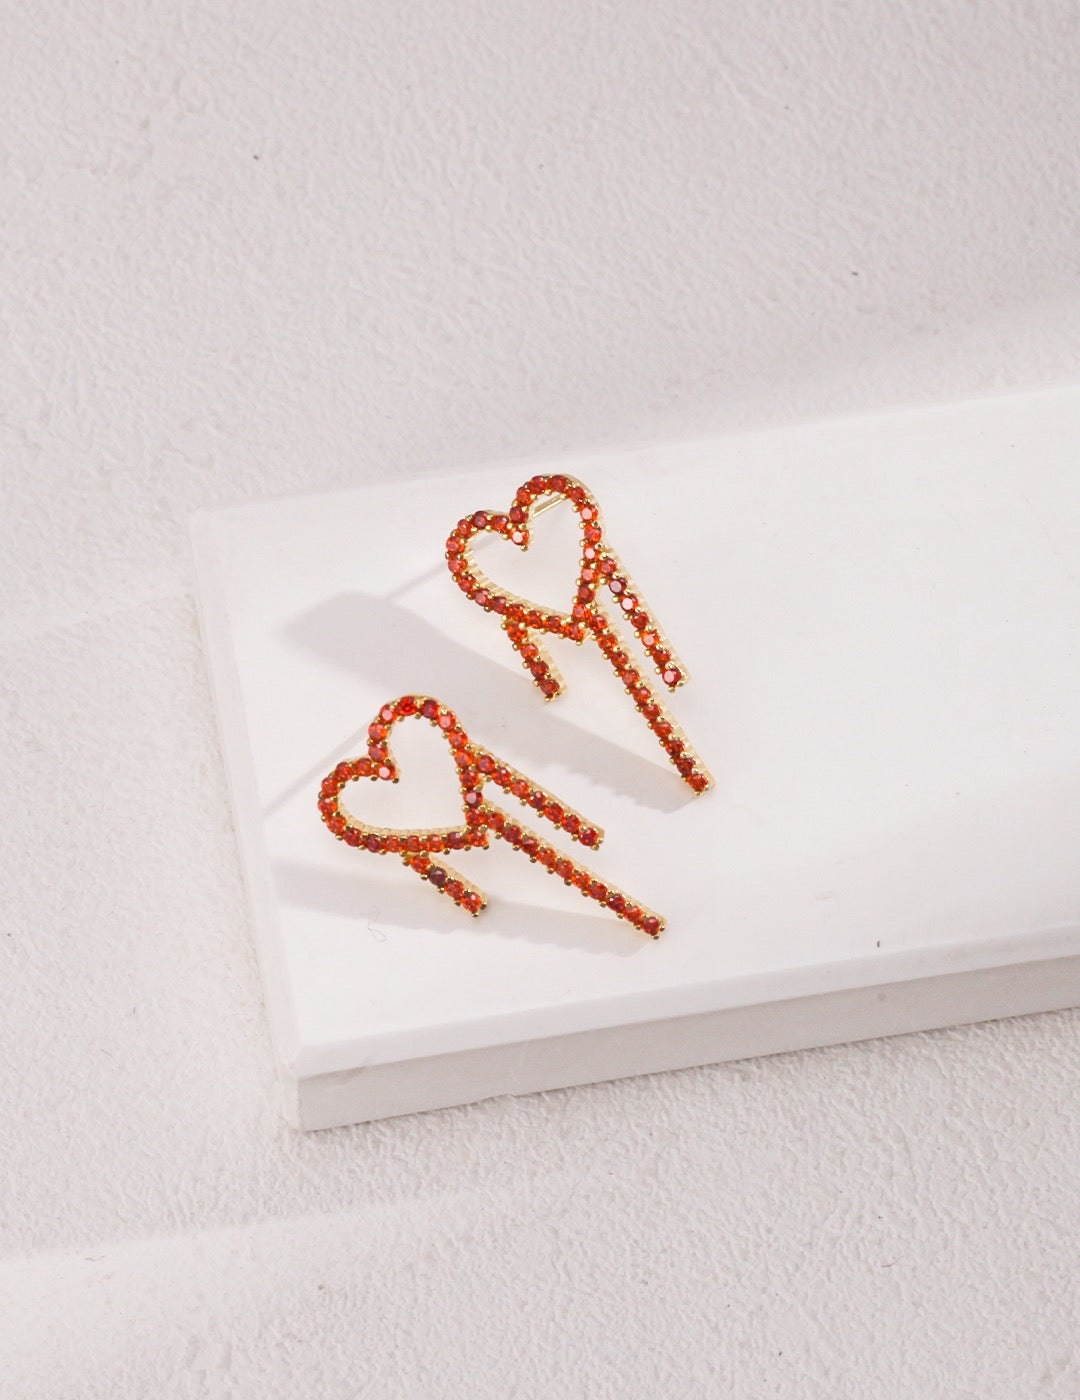 Melting Red Heart Earrings | Gold earrings | Silver earrings | Heart earrings | Estincele Jewellery